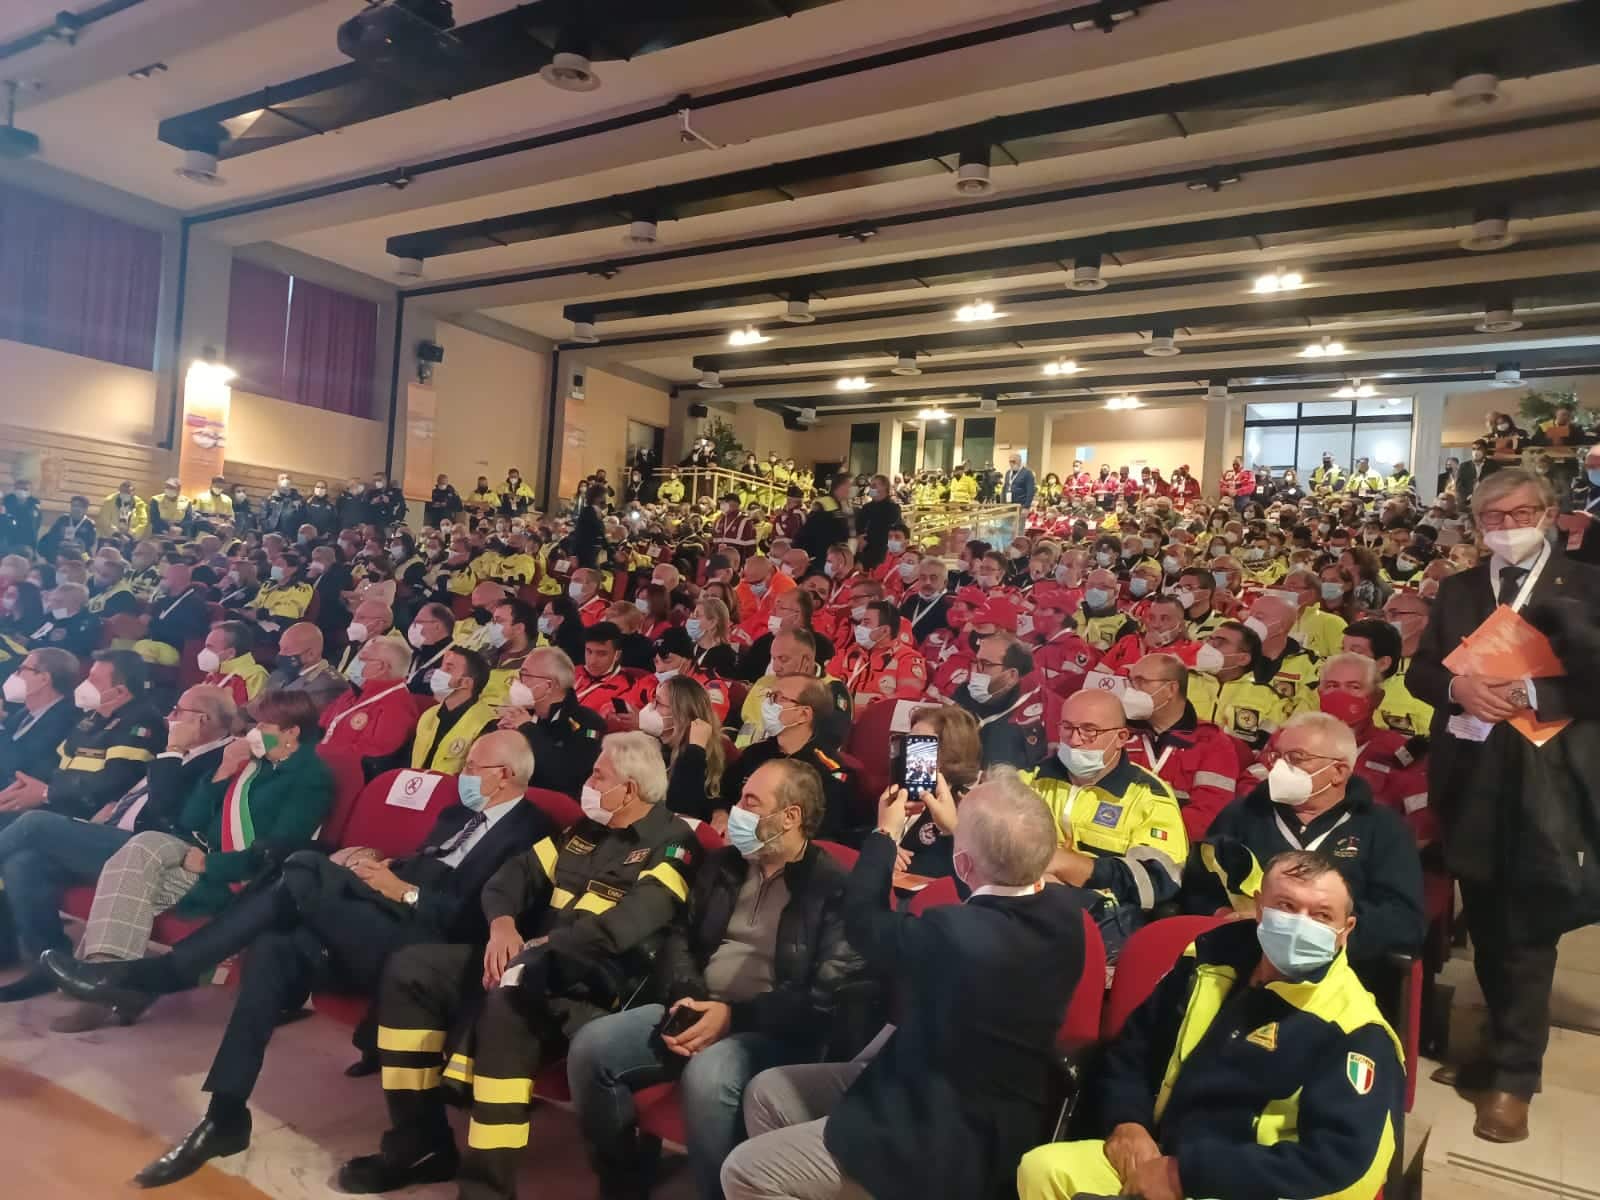 Giornate Volontariato Siciliano, Musumeci: “I nostri volontari sono pronti e motivati” – FOTO e VIDEO